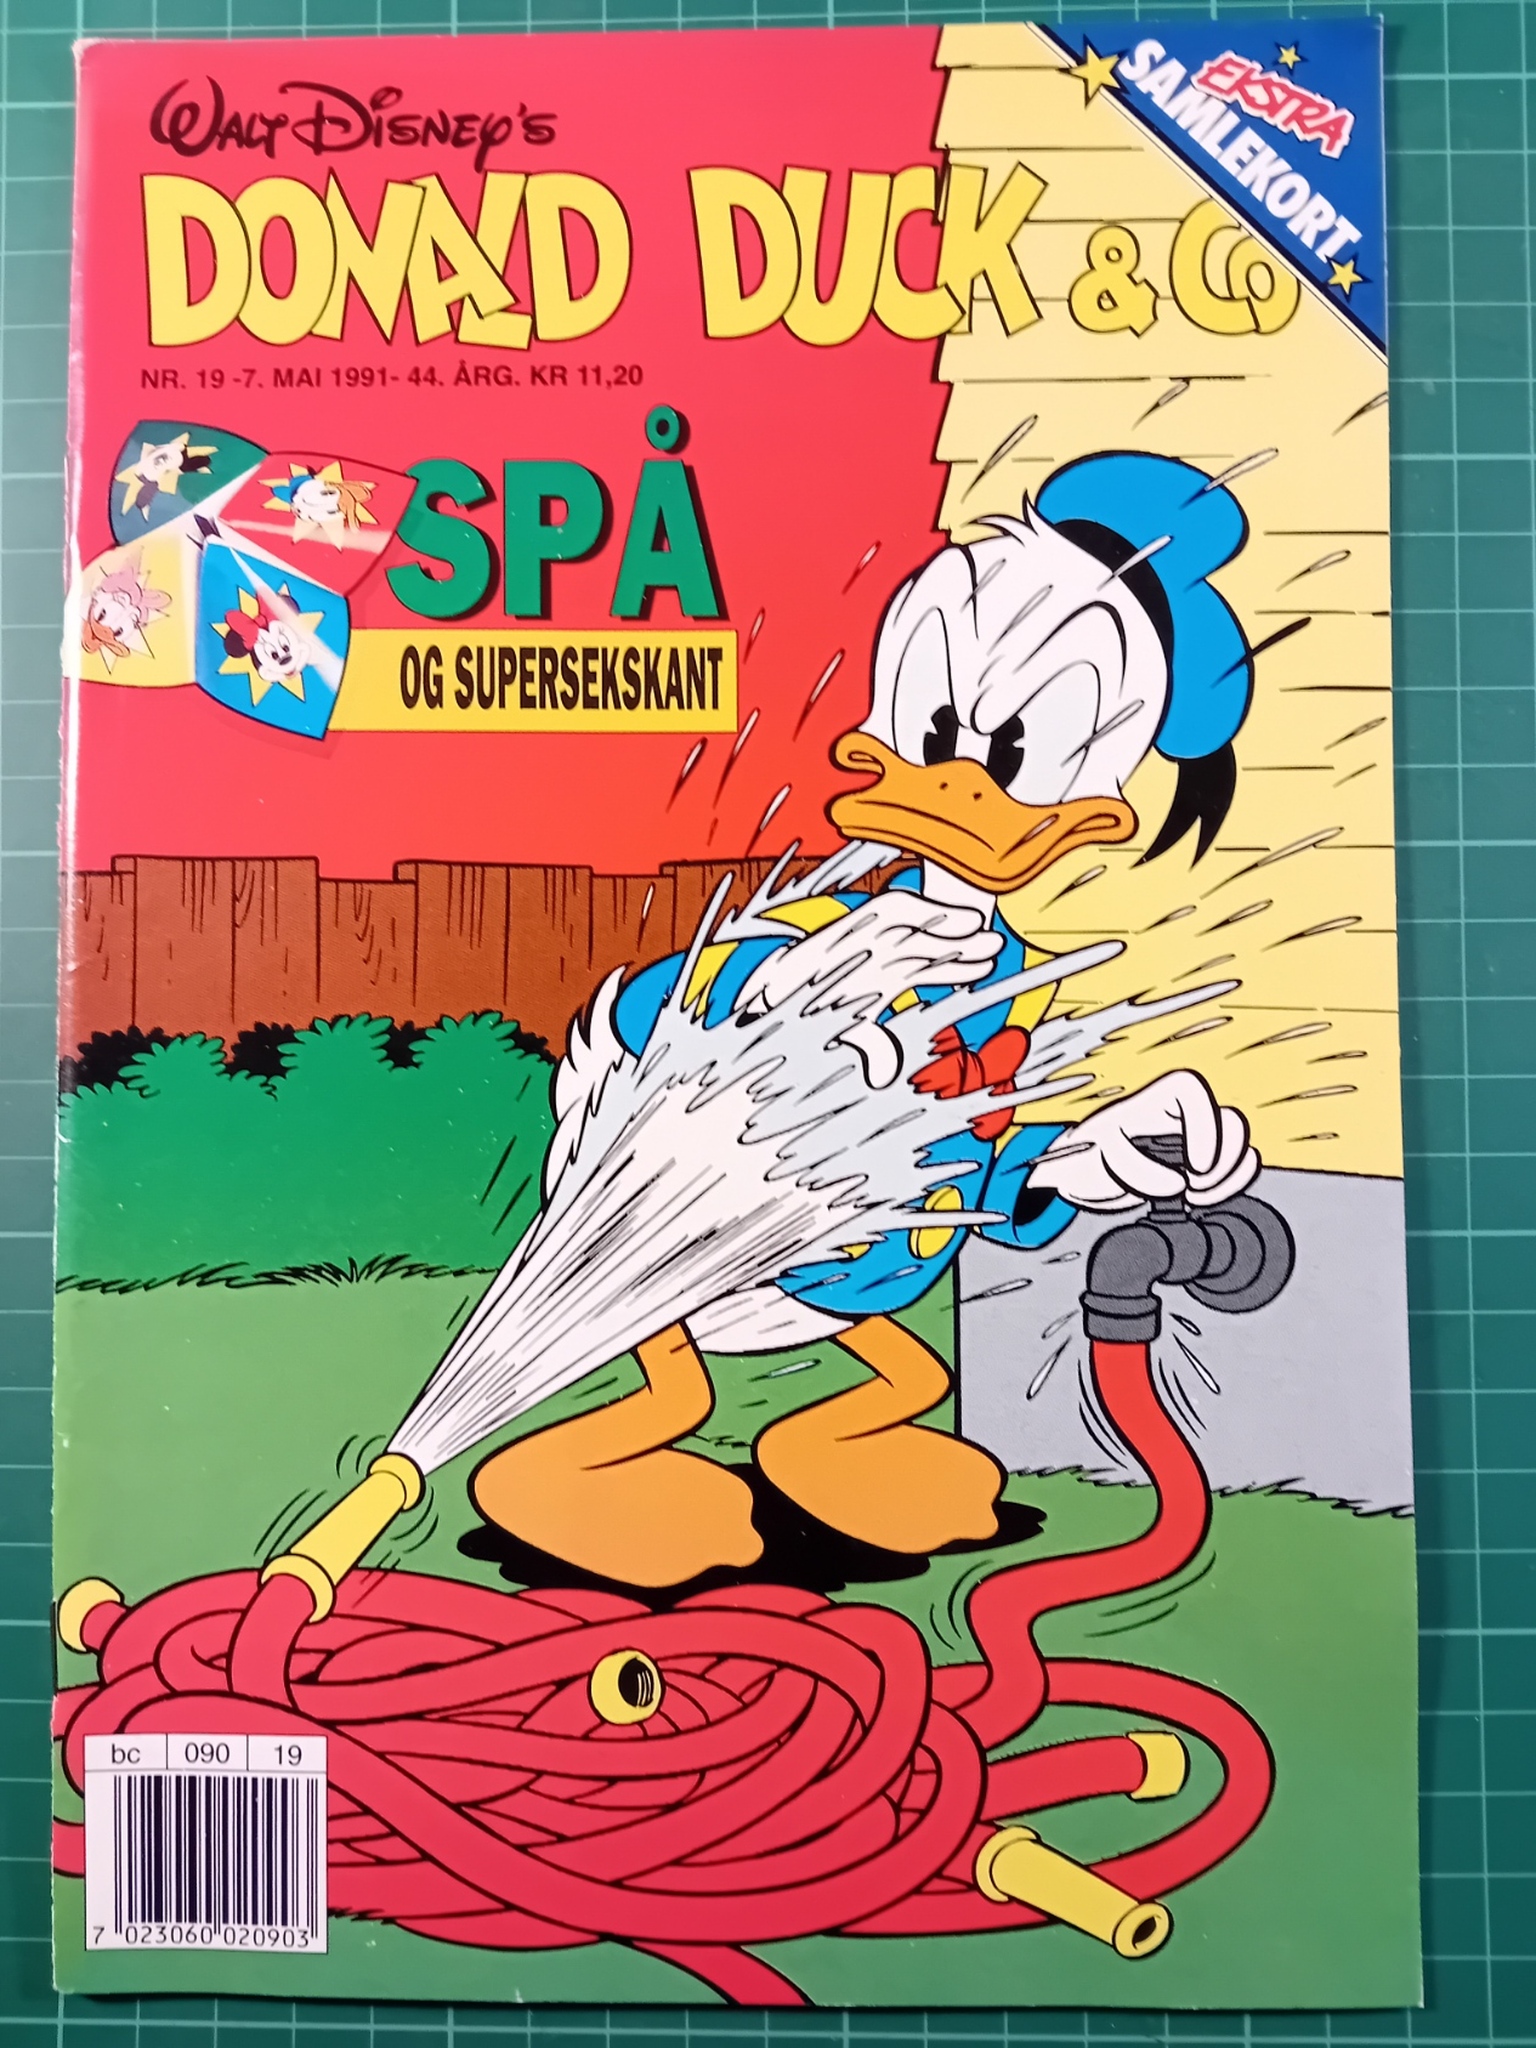 Donald Duck & Co 1991 - 19 m/samlerkort og spå supersekskant